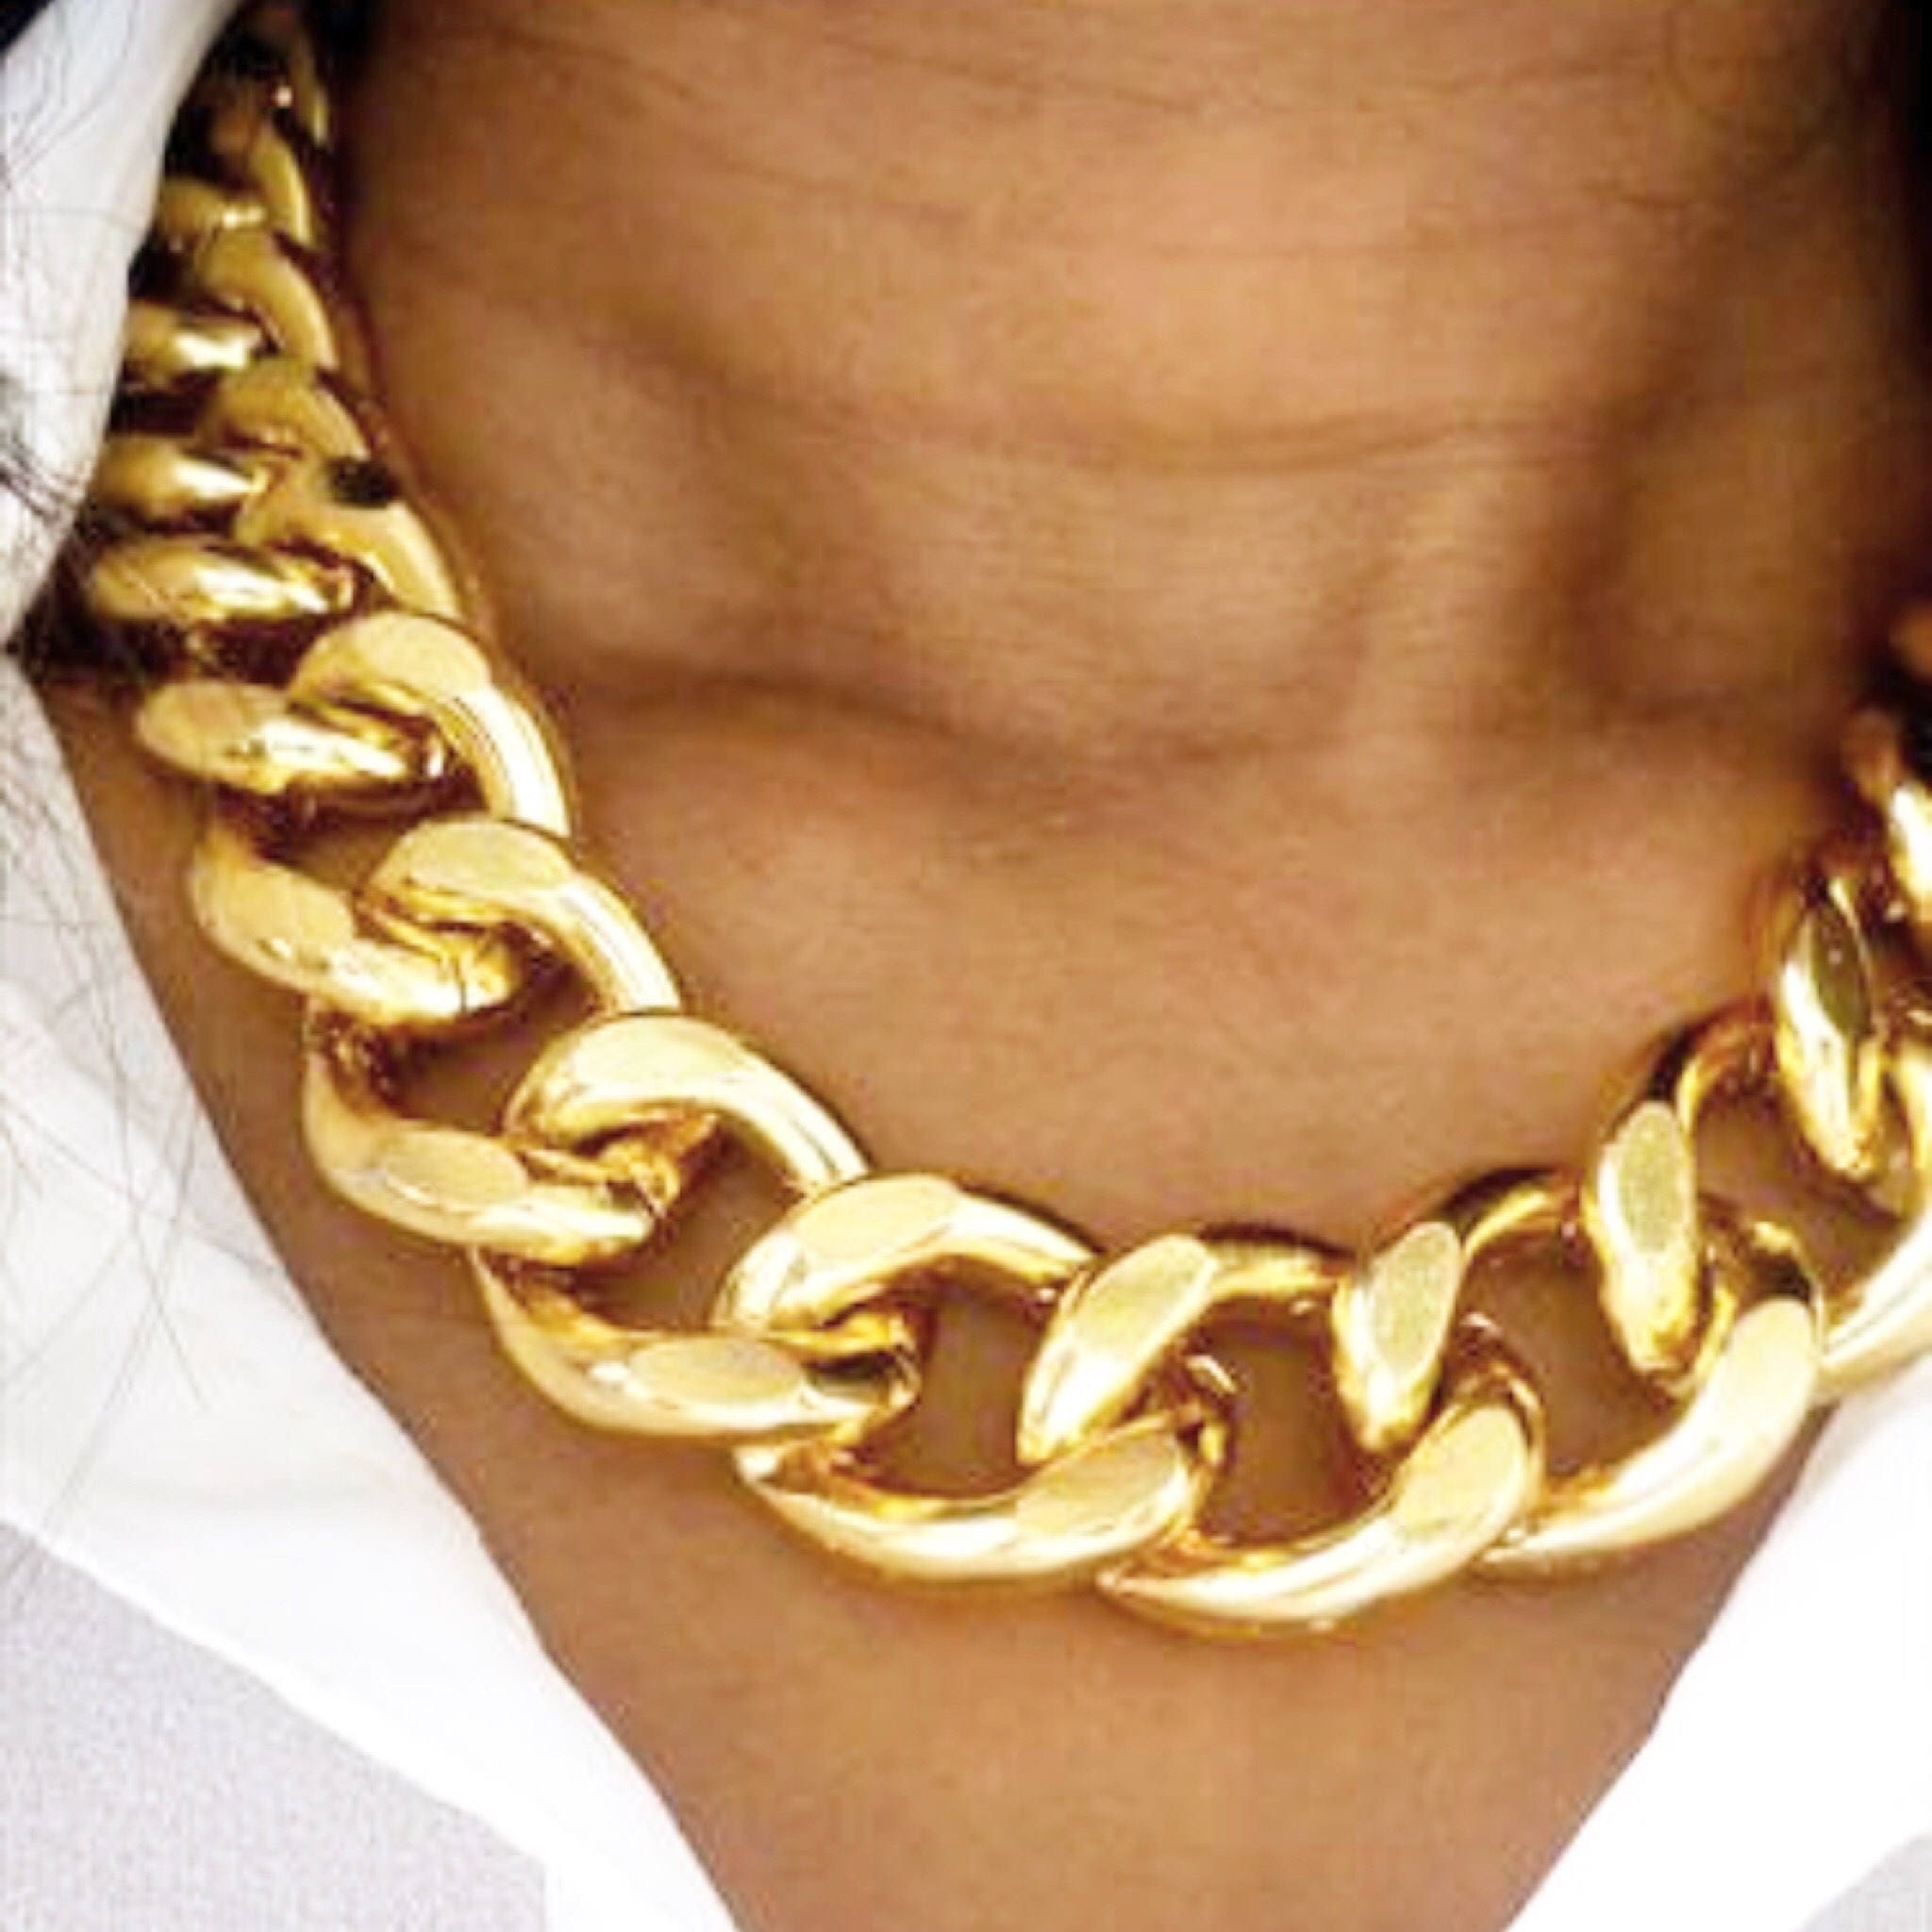 a gold chain